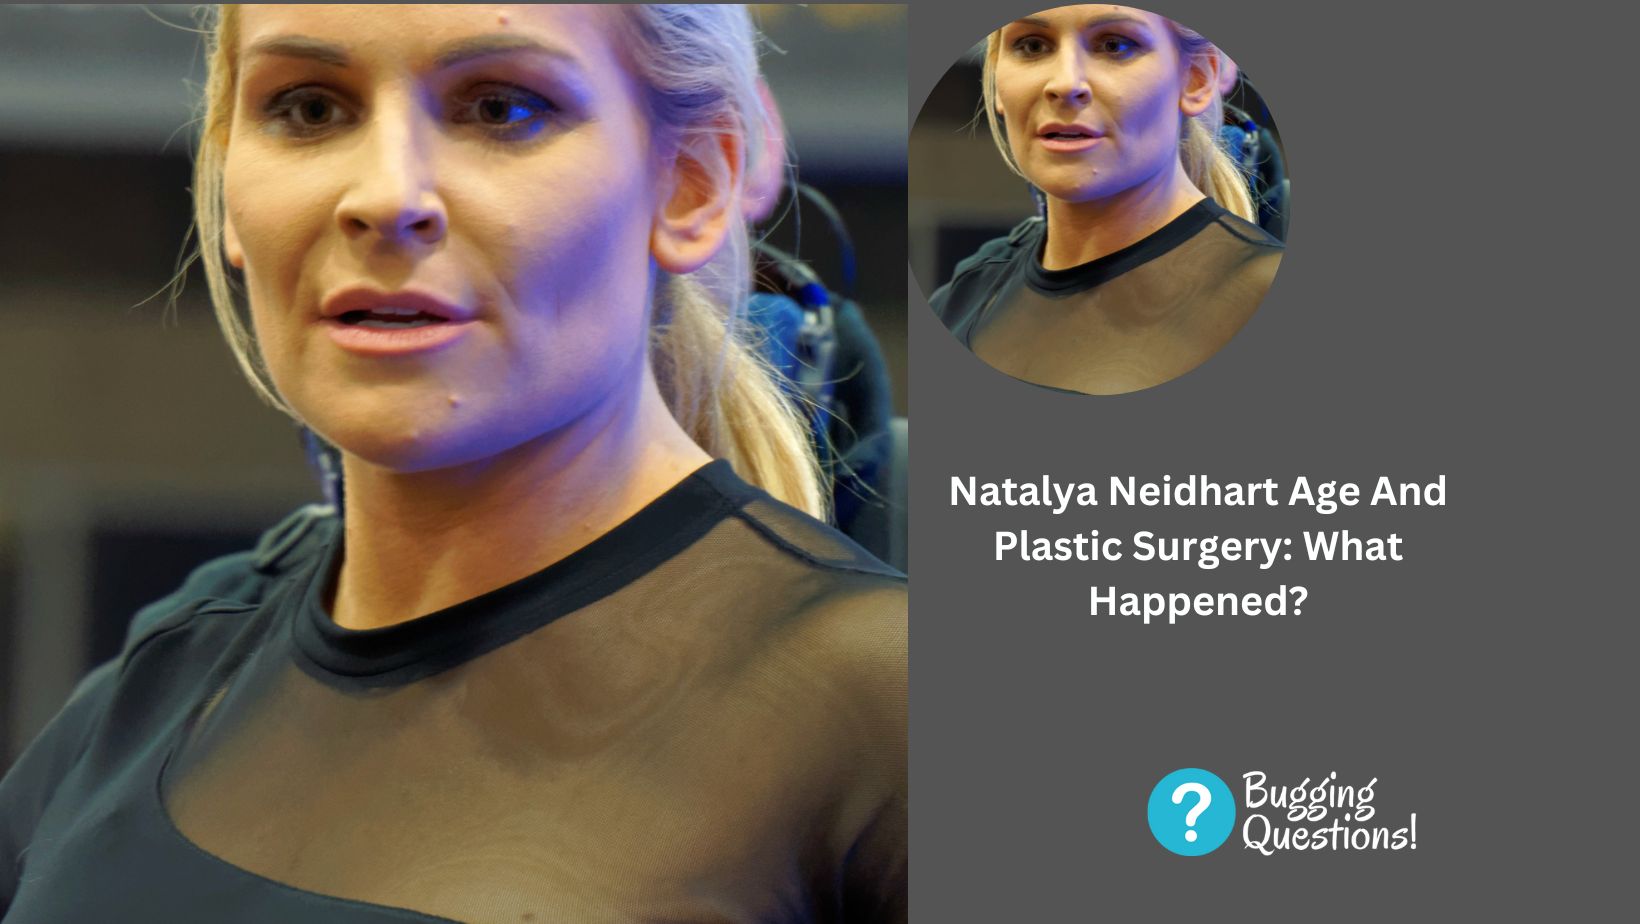 Natalya Neidhart Age And Plastic Surgery: What Happened?